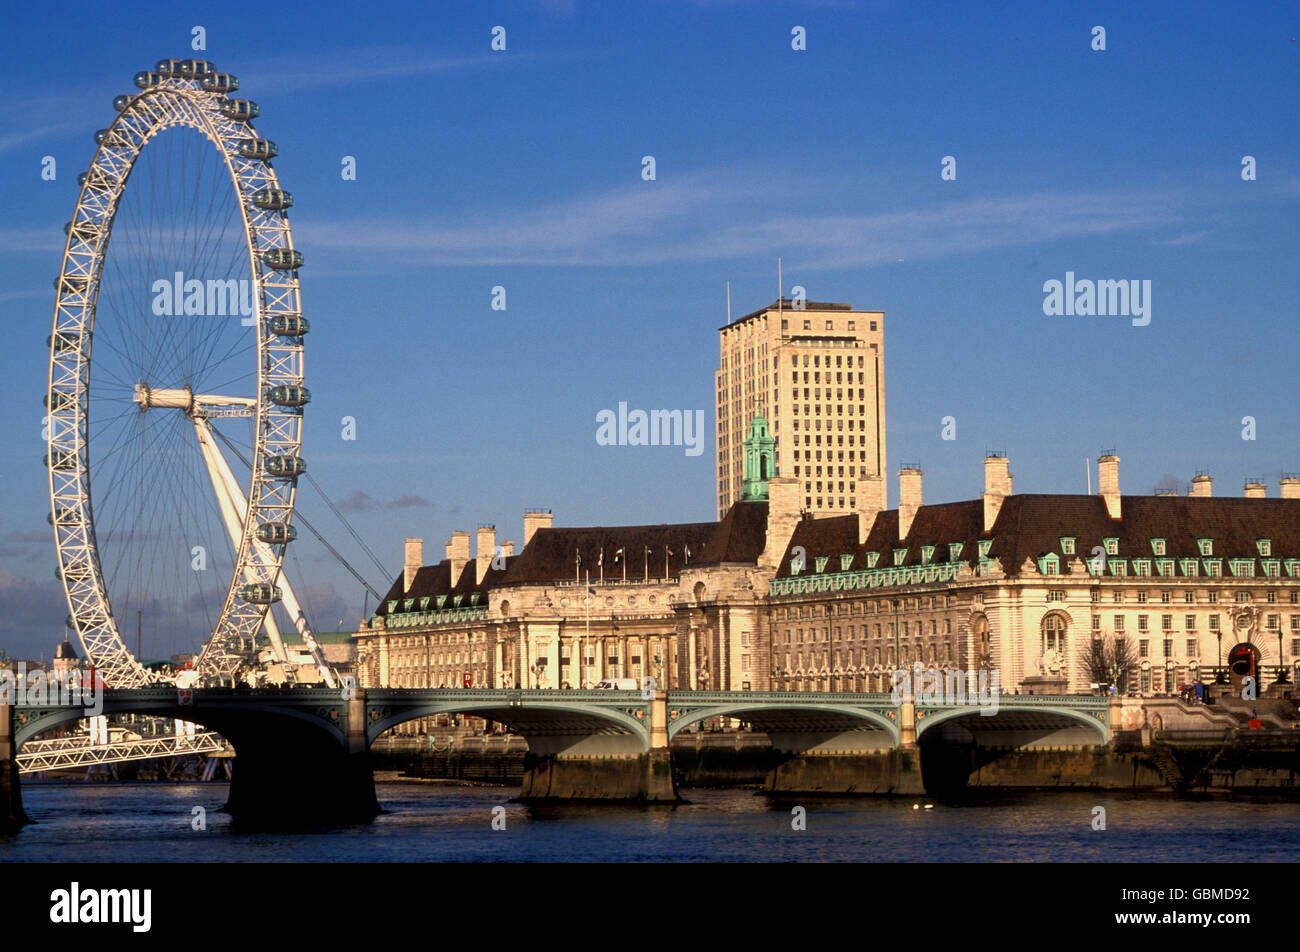 Le London Eye, une grande roue de Ferris avec County Hall, rive sud de la Tamise, Londres, Royaume-Uni Banque D'Images